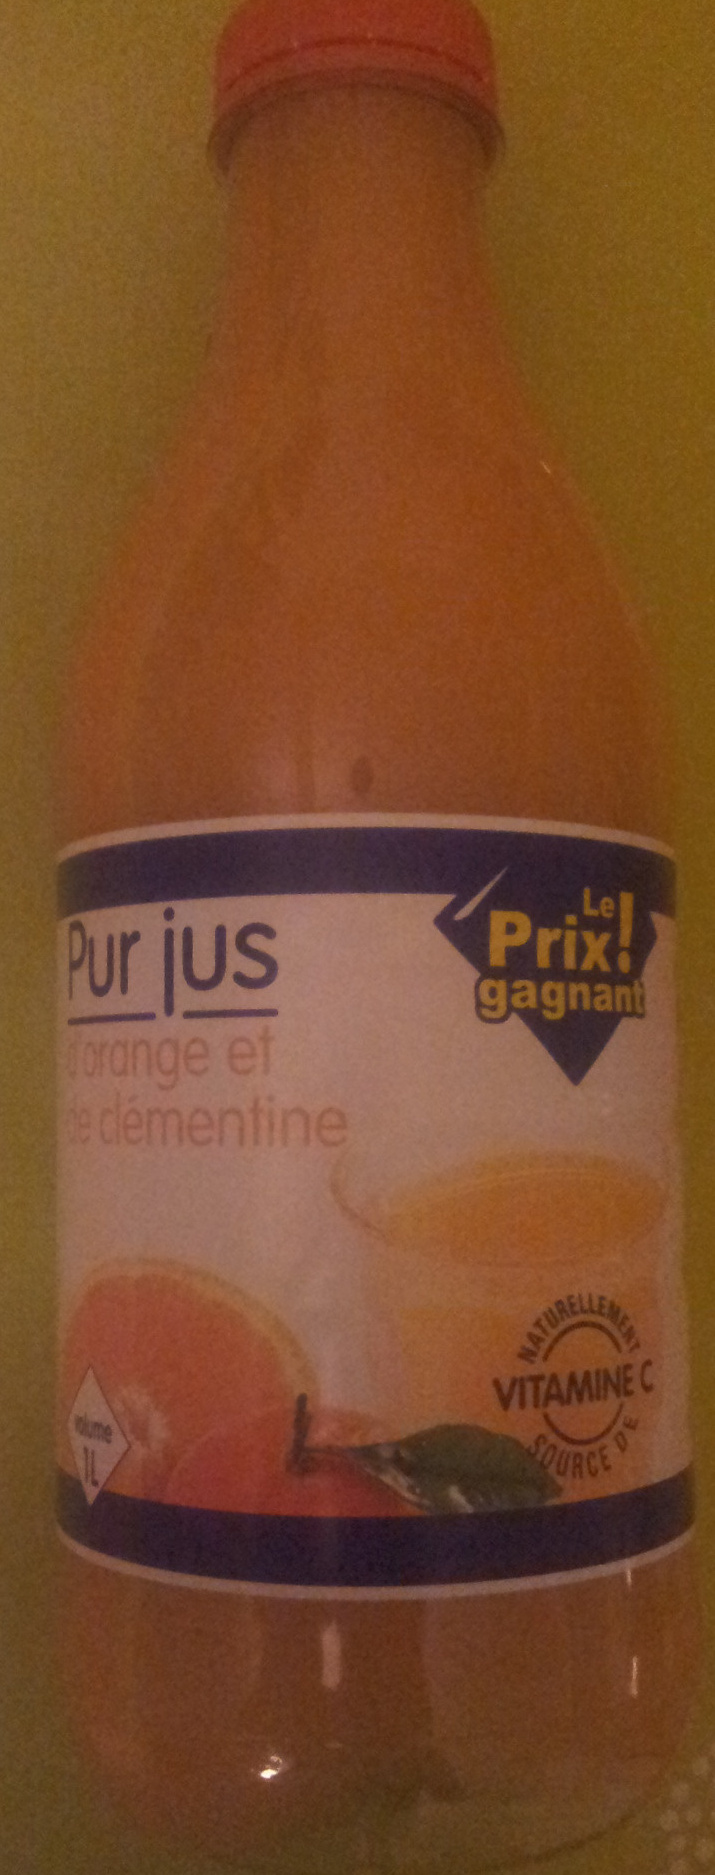 Pur jus d'orange et de clémentine - Product - fr